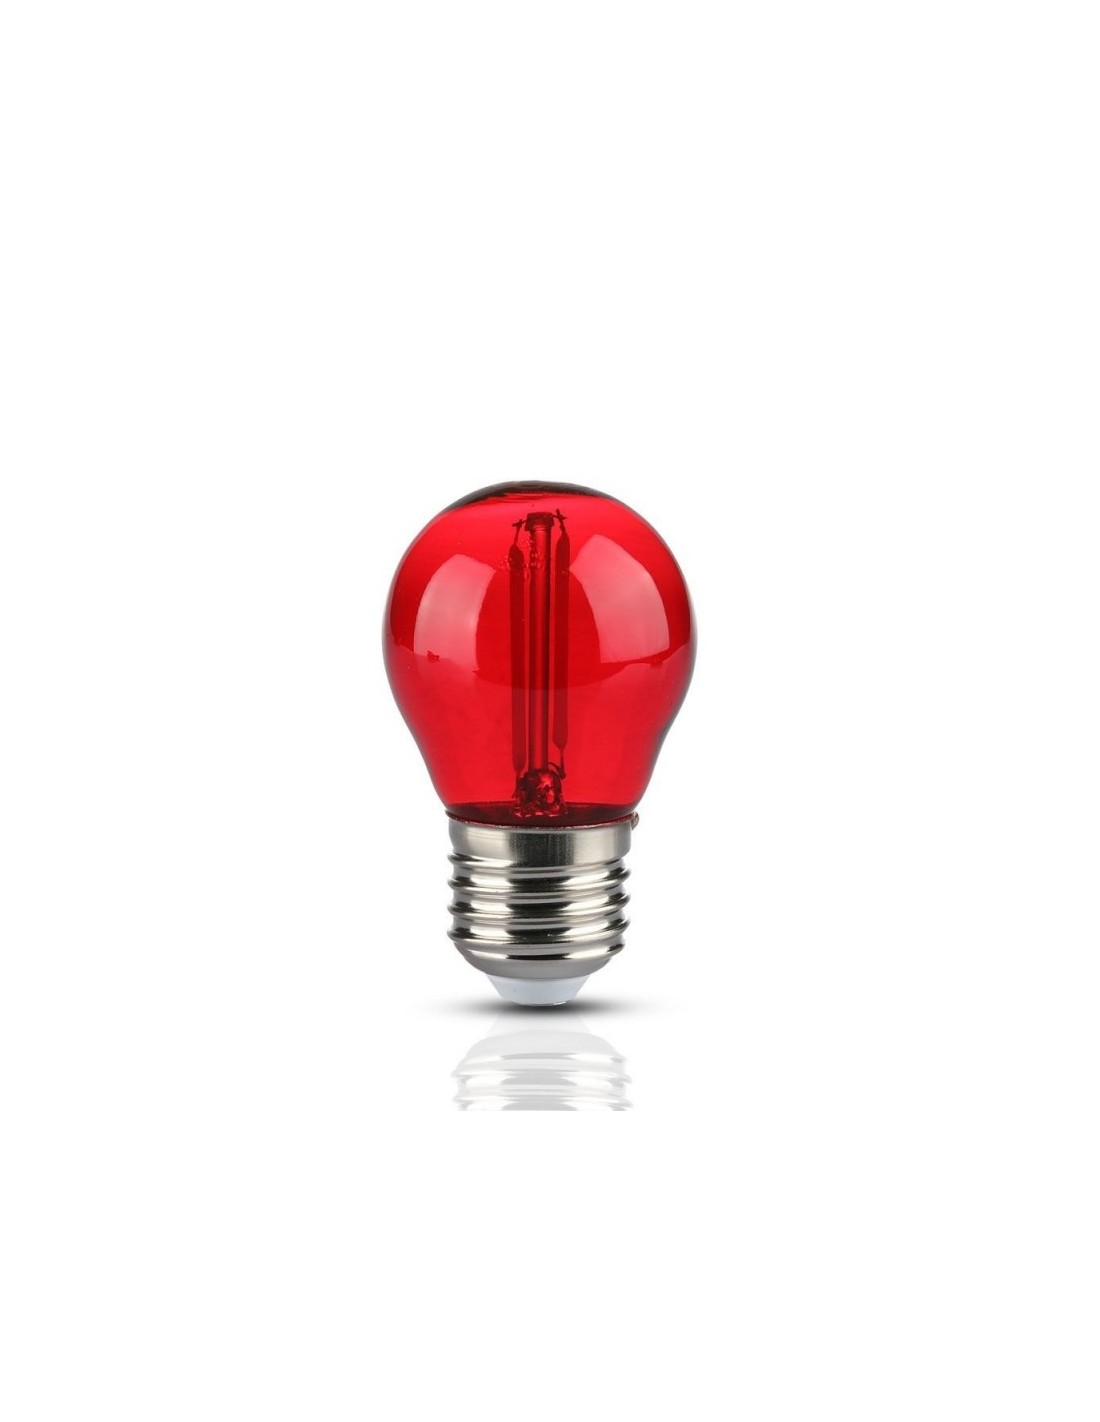 V-TAC VT-2132 Lampe ampoule led rouge 2W E27 G45 filament verre coloré rouge  rouge - SKU 217413